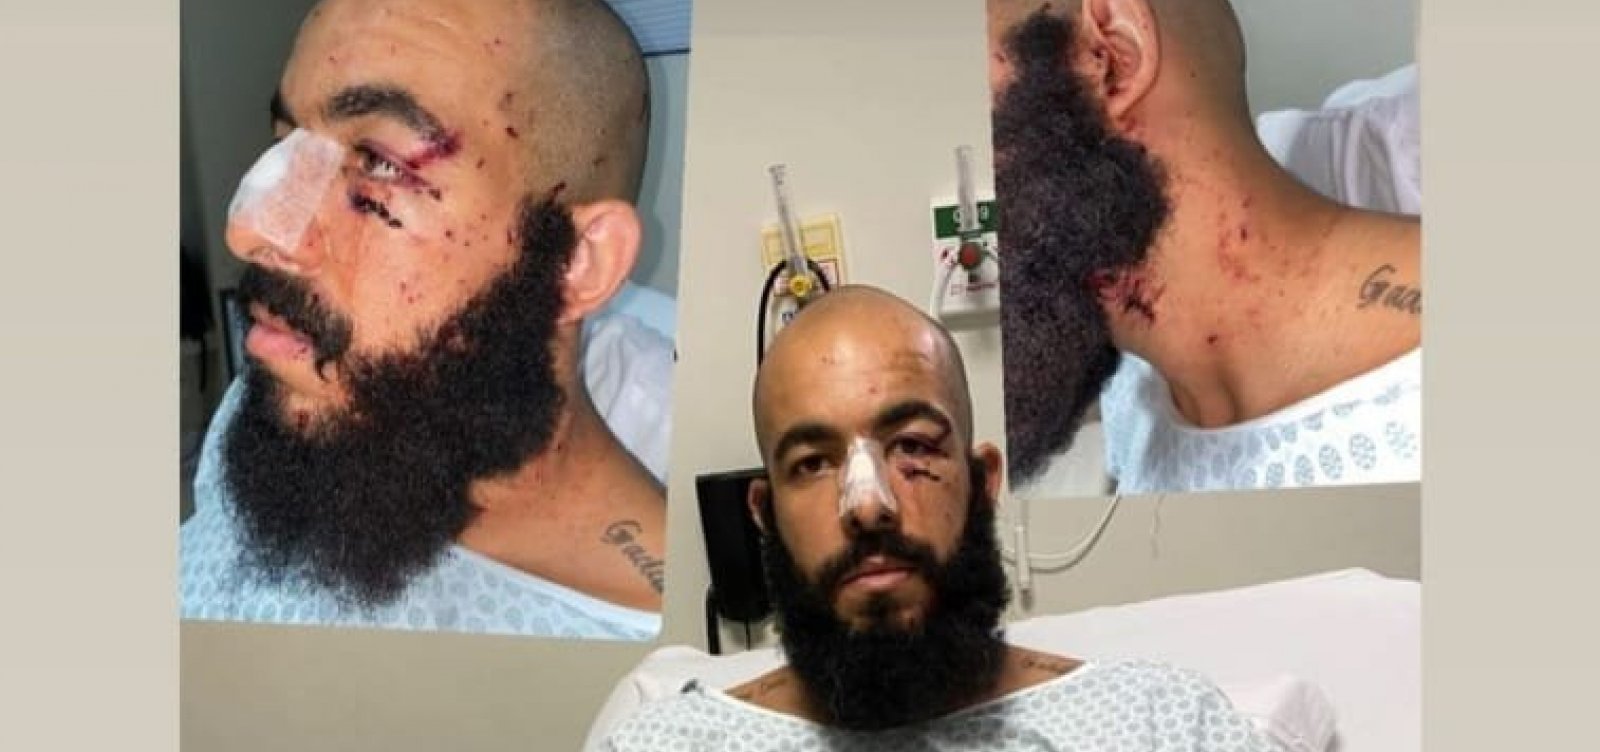 Vítima de ataque, goleiro do Bahia publica foto com ferimentos e questiona: "Até quando?"